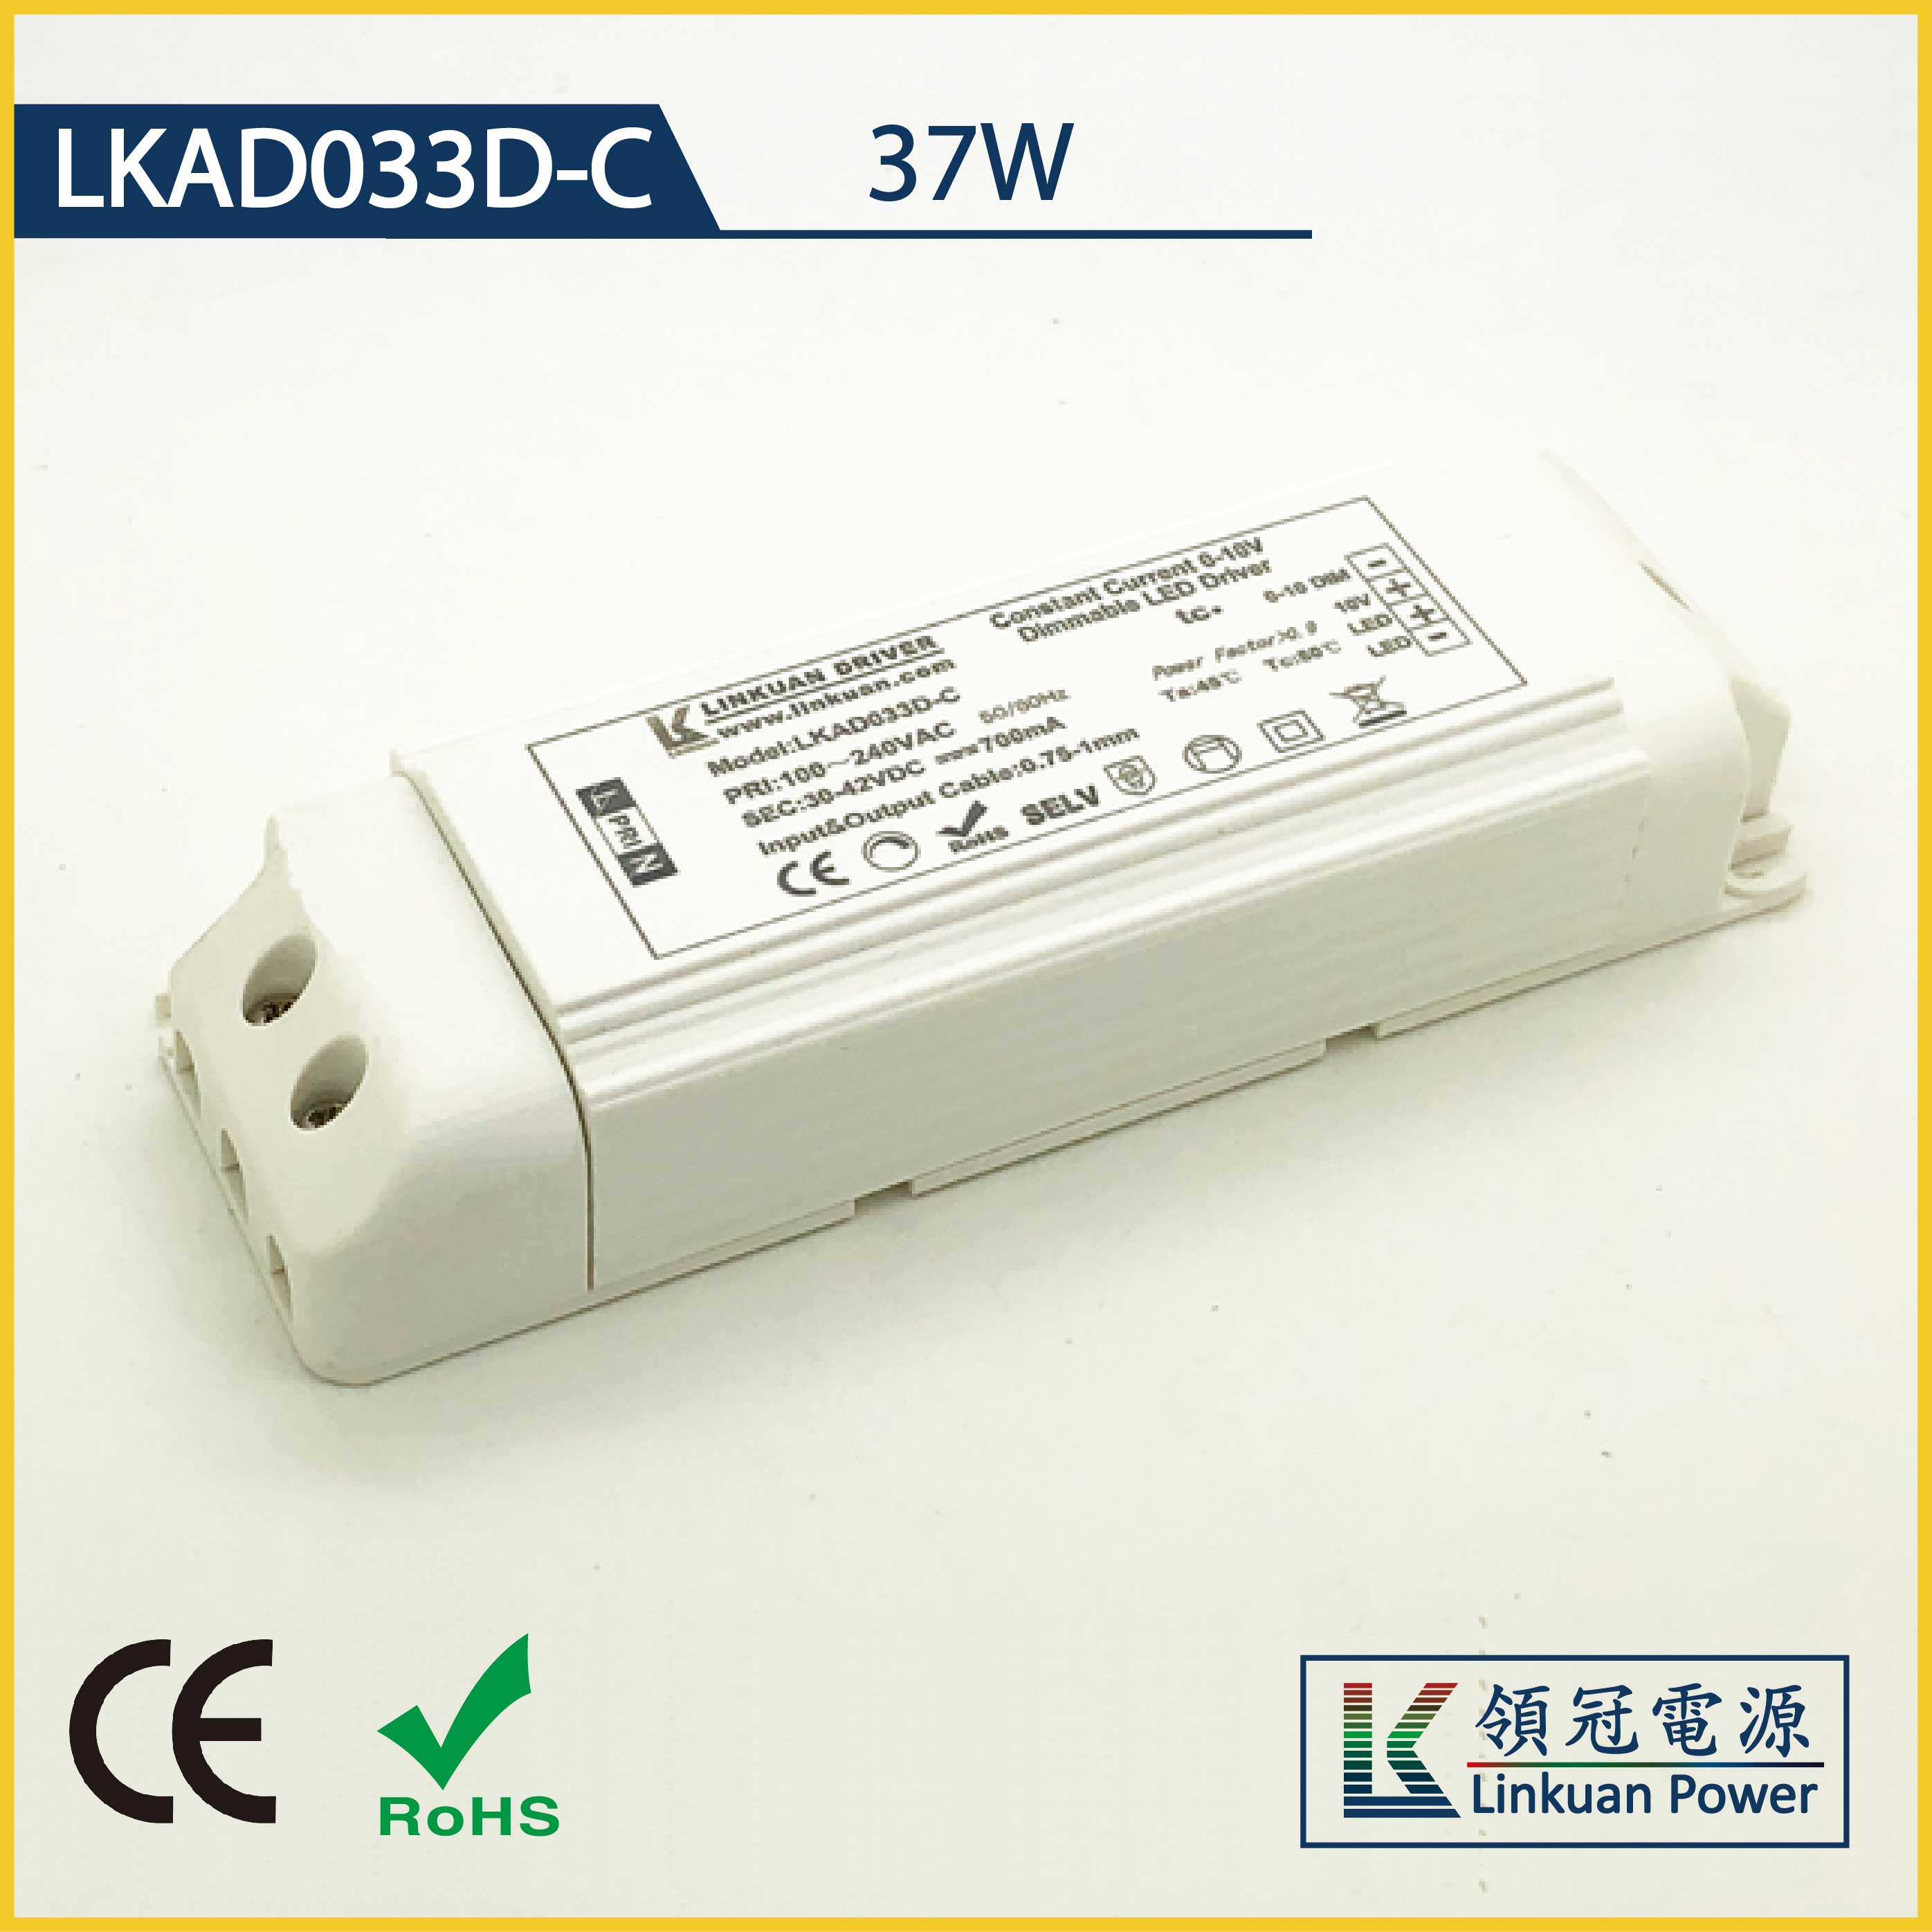 LKAD033D-C 37W 5-42V 900mA 0-10V Dimming LED drivers